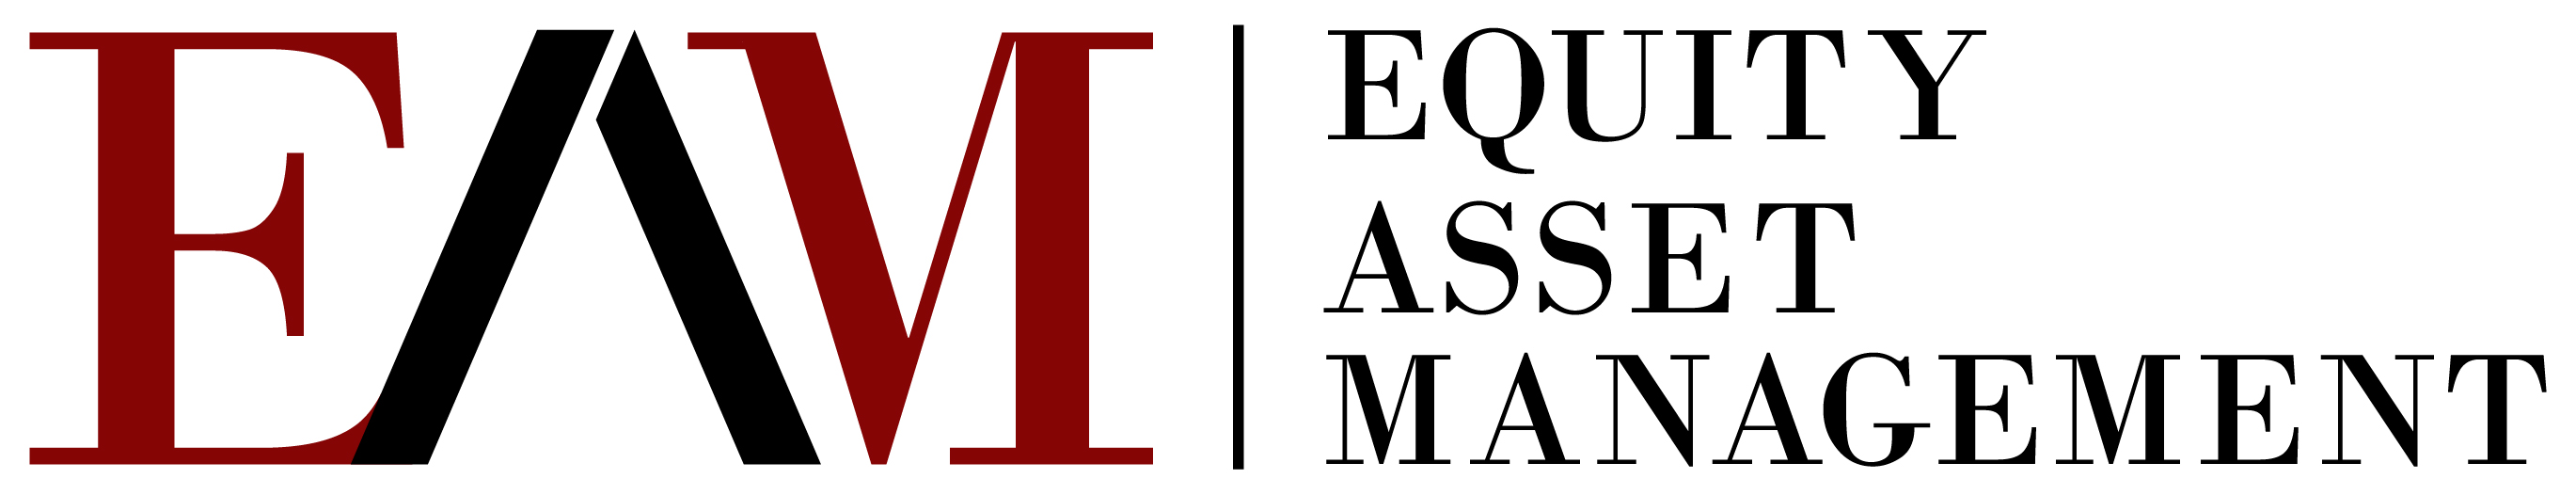 Equity Asset Management, LLC.